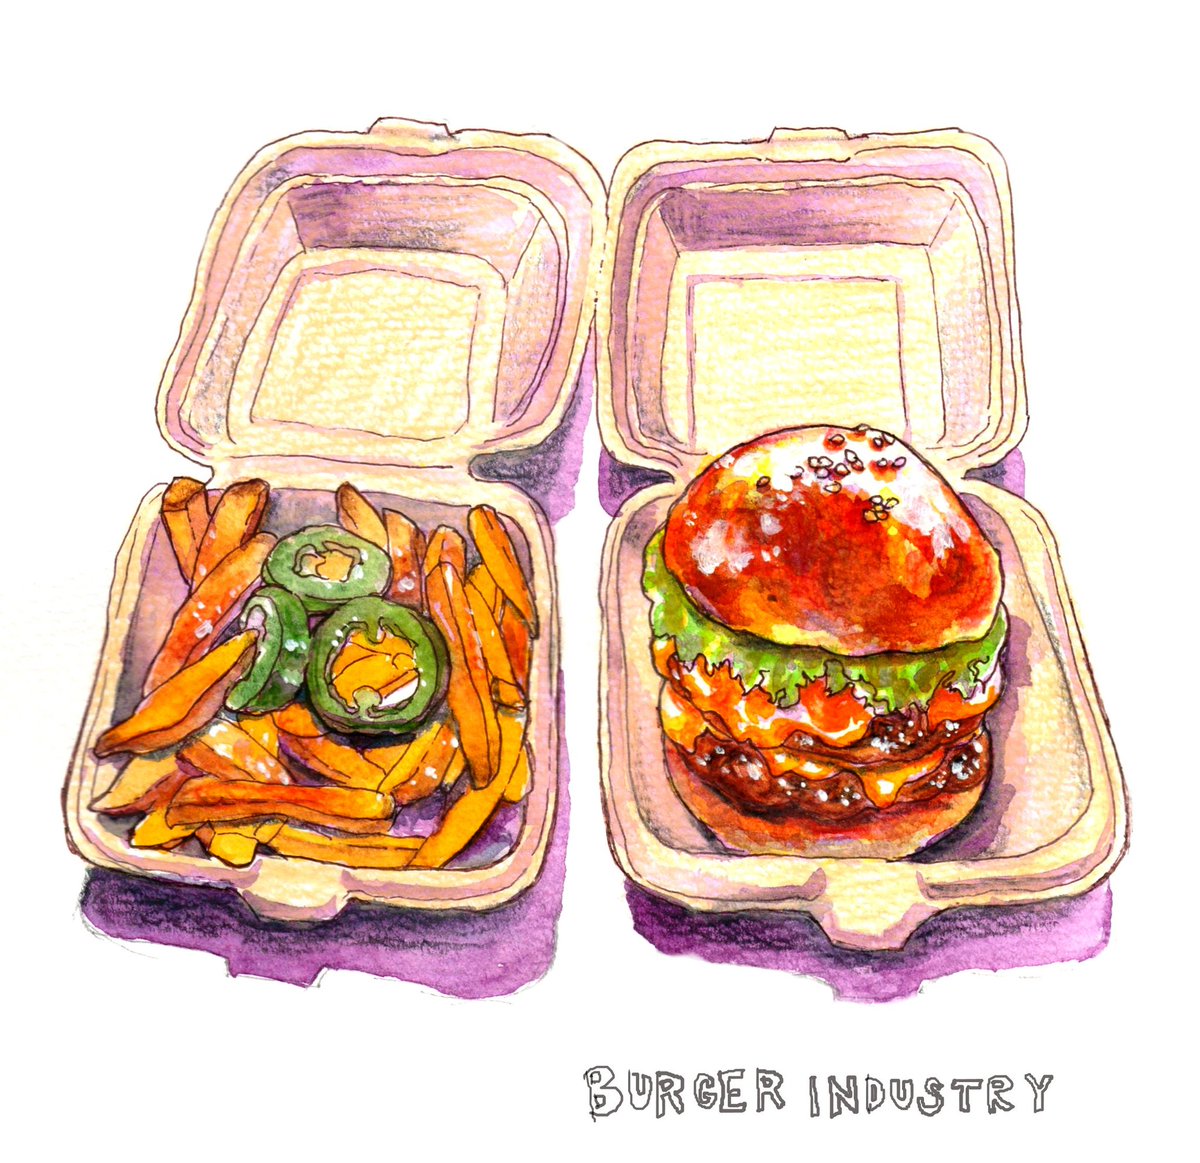 「ジューシーなハンバーガーを食べた。ポテトに乗ってるハラペーニョピクルスが良い辛さ」|ナカイタエ(旧たぁぽ)のイラスト